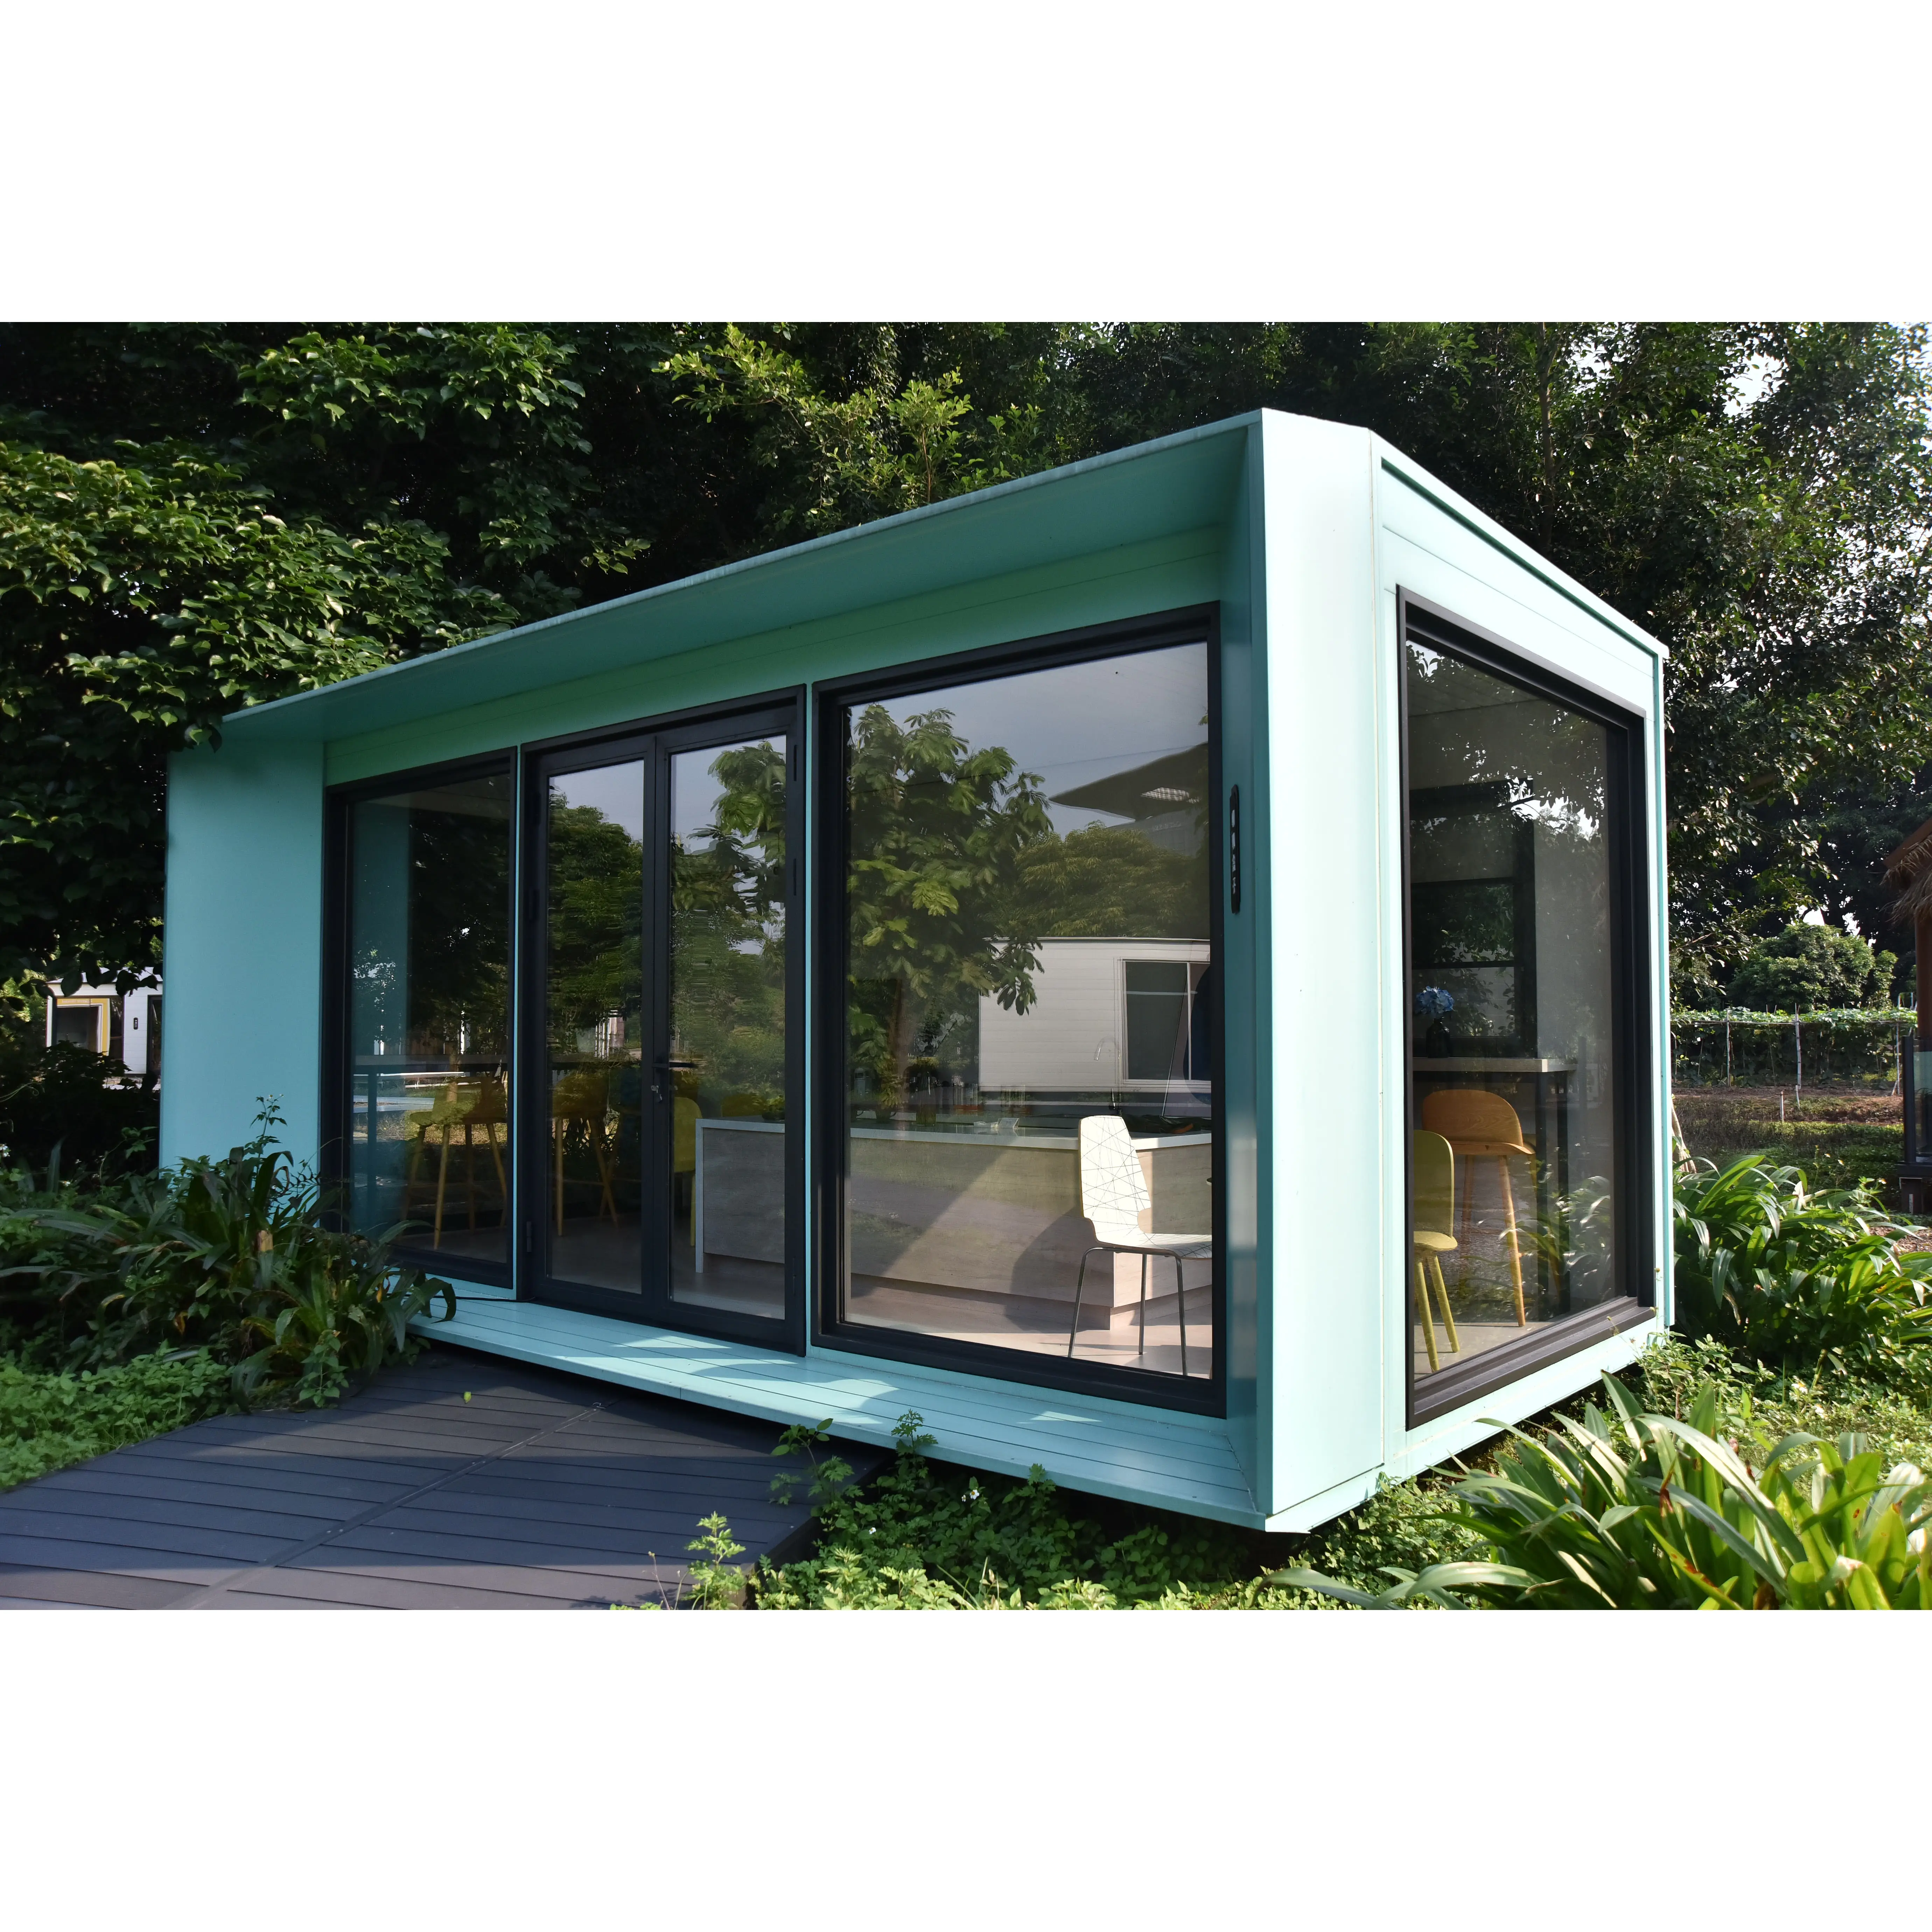 정원 헛간 금속 건물 옥외 저장 헛간 조립식 집 산업 디자인 휴대용 나무로 되는 아파트 콘테이너 집